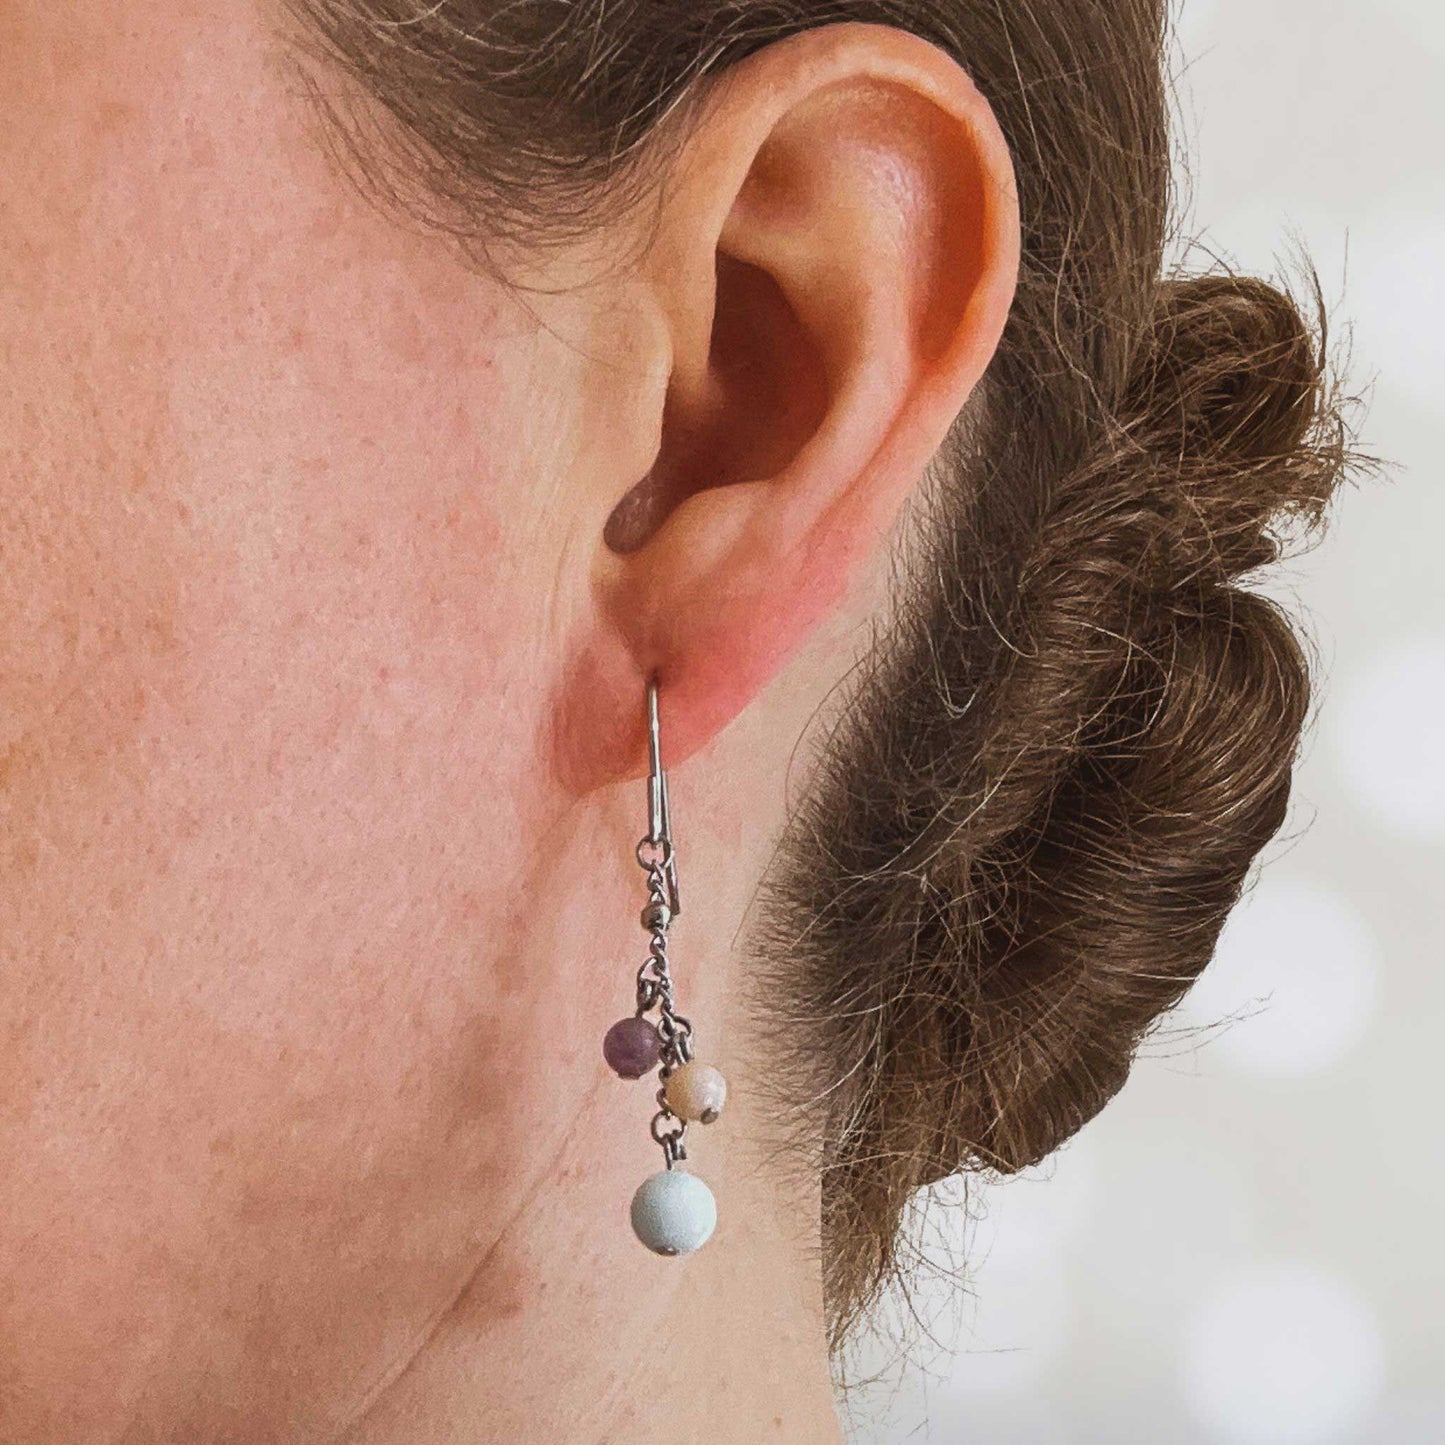 Women wearing blue, pink & purple gemstone drop earring in earlobe